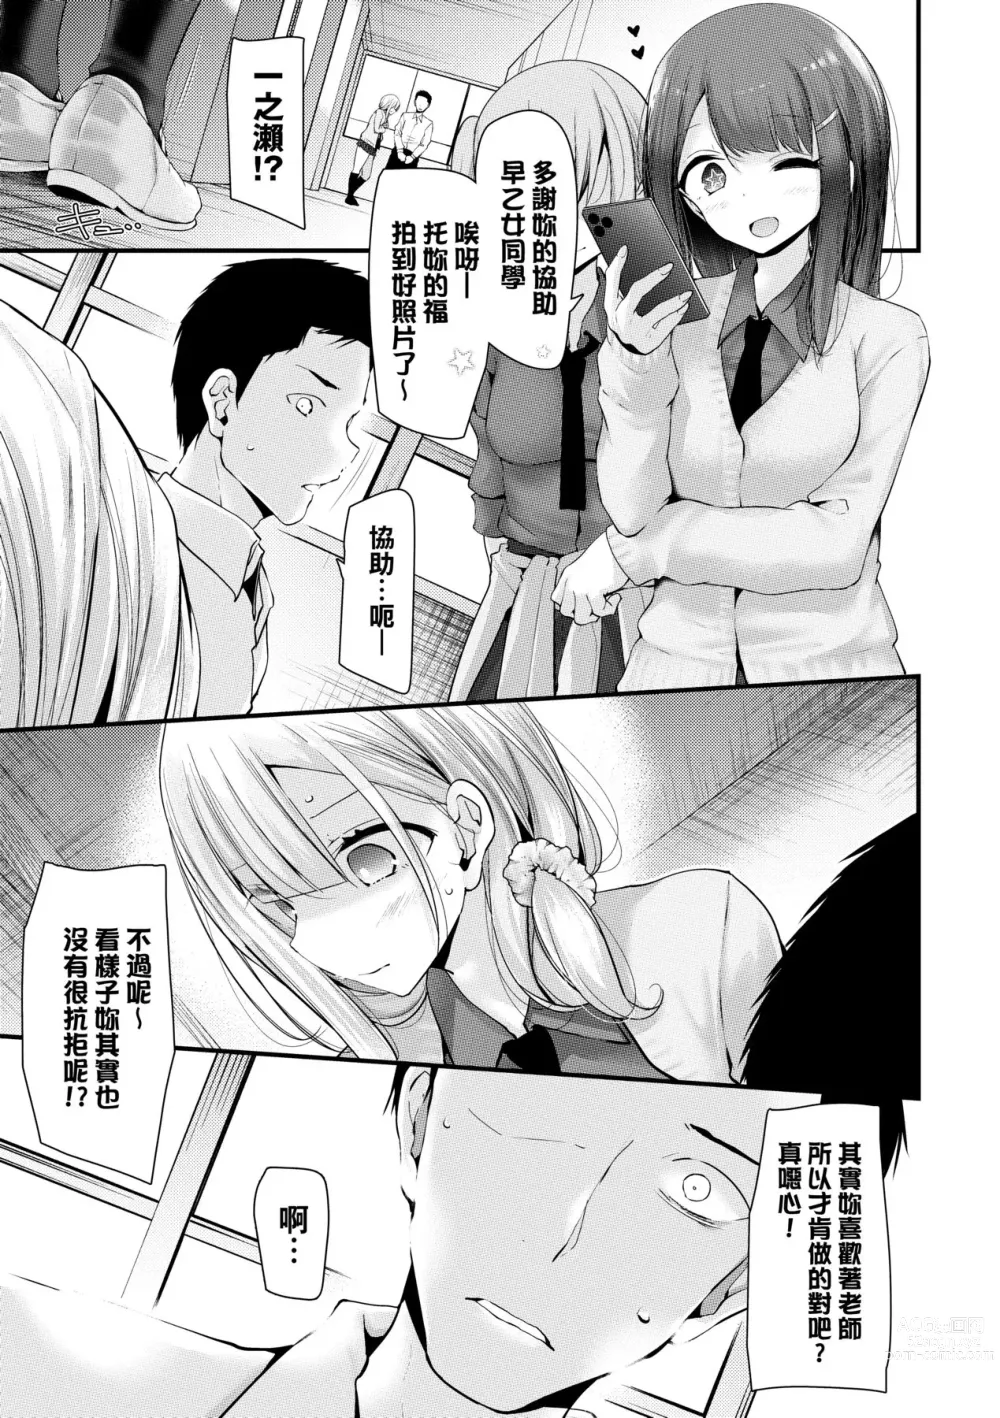 Page 18 of manga 自慰套教室-新學期- 女學生播種懲罰計畫 (decensored)